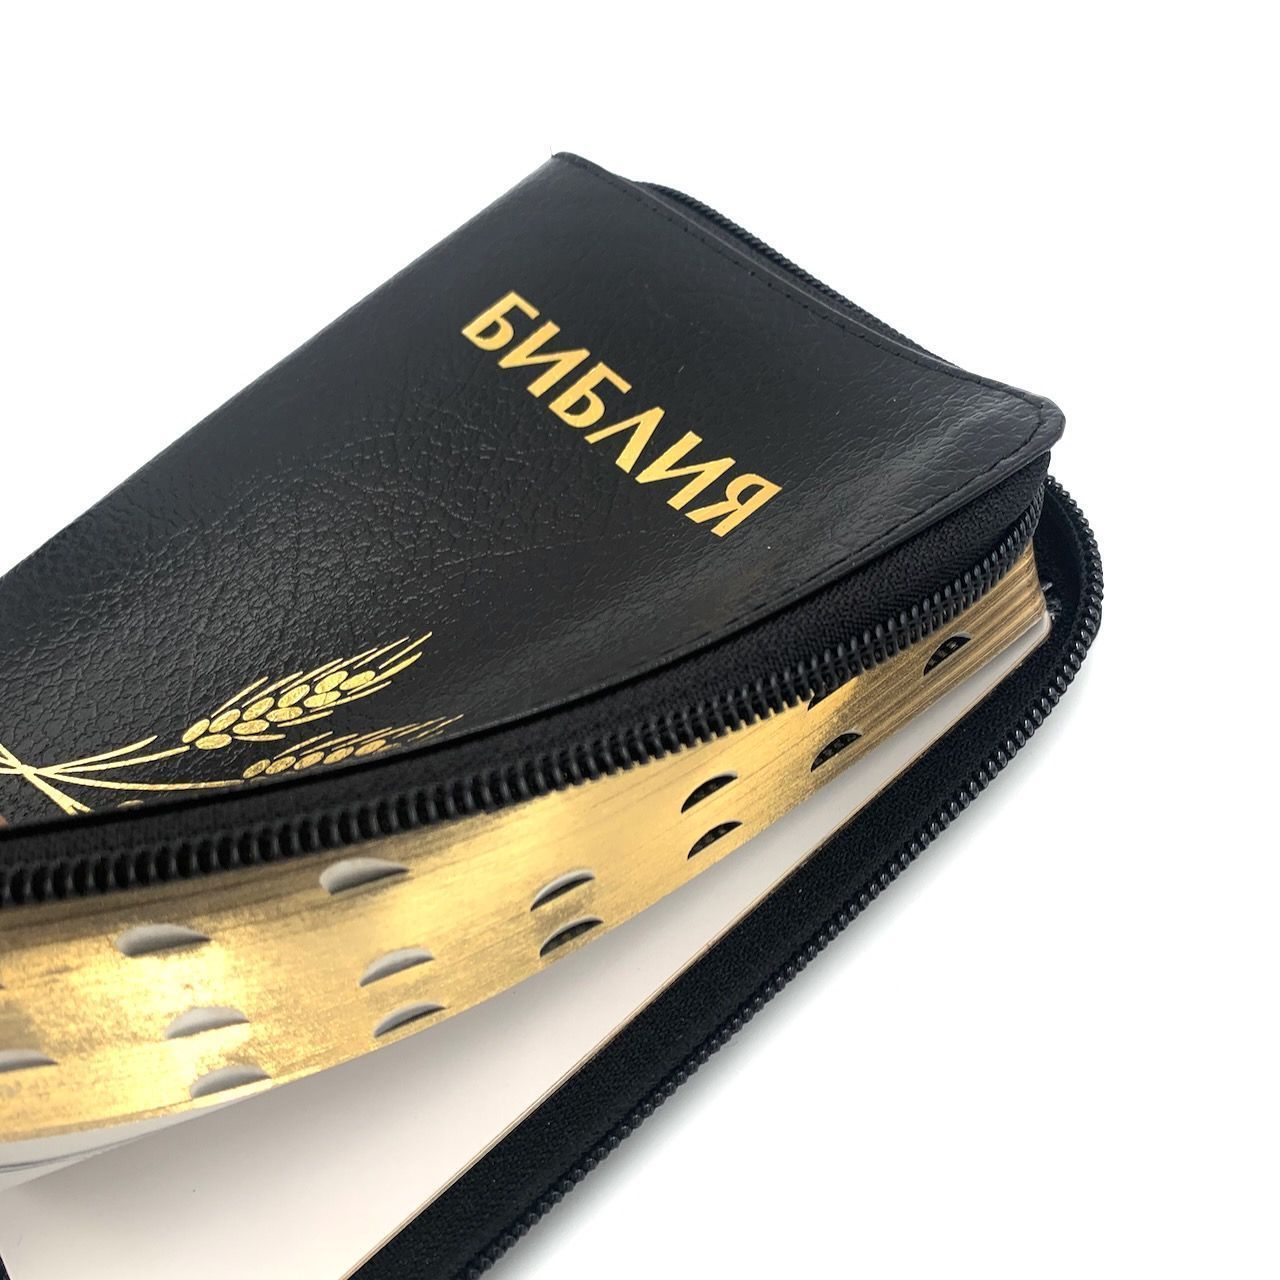 Библия 046zti формат, дизайн колос, цвет черный, кожаный переплет на молнии с индексами, золотые страницы, размер 115*168 мм, размер шрифта 10-11 кегель